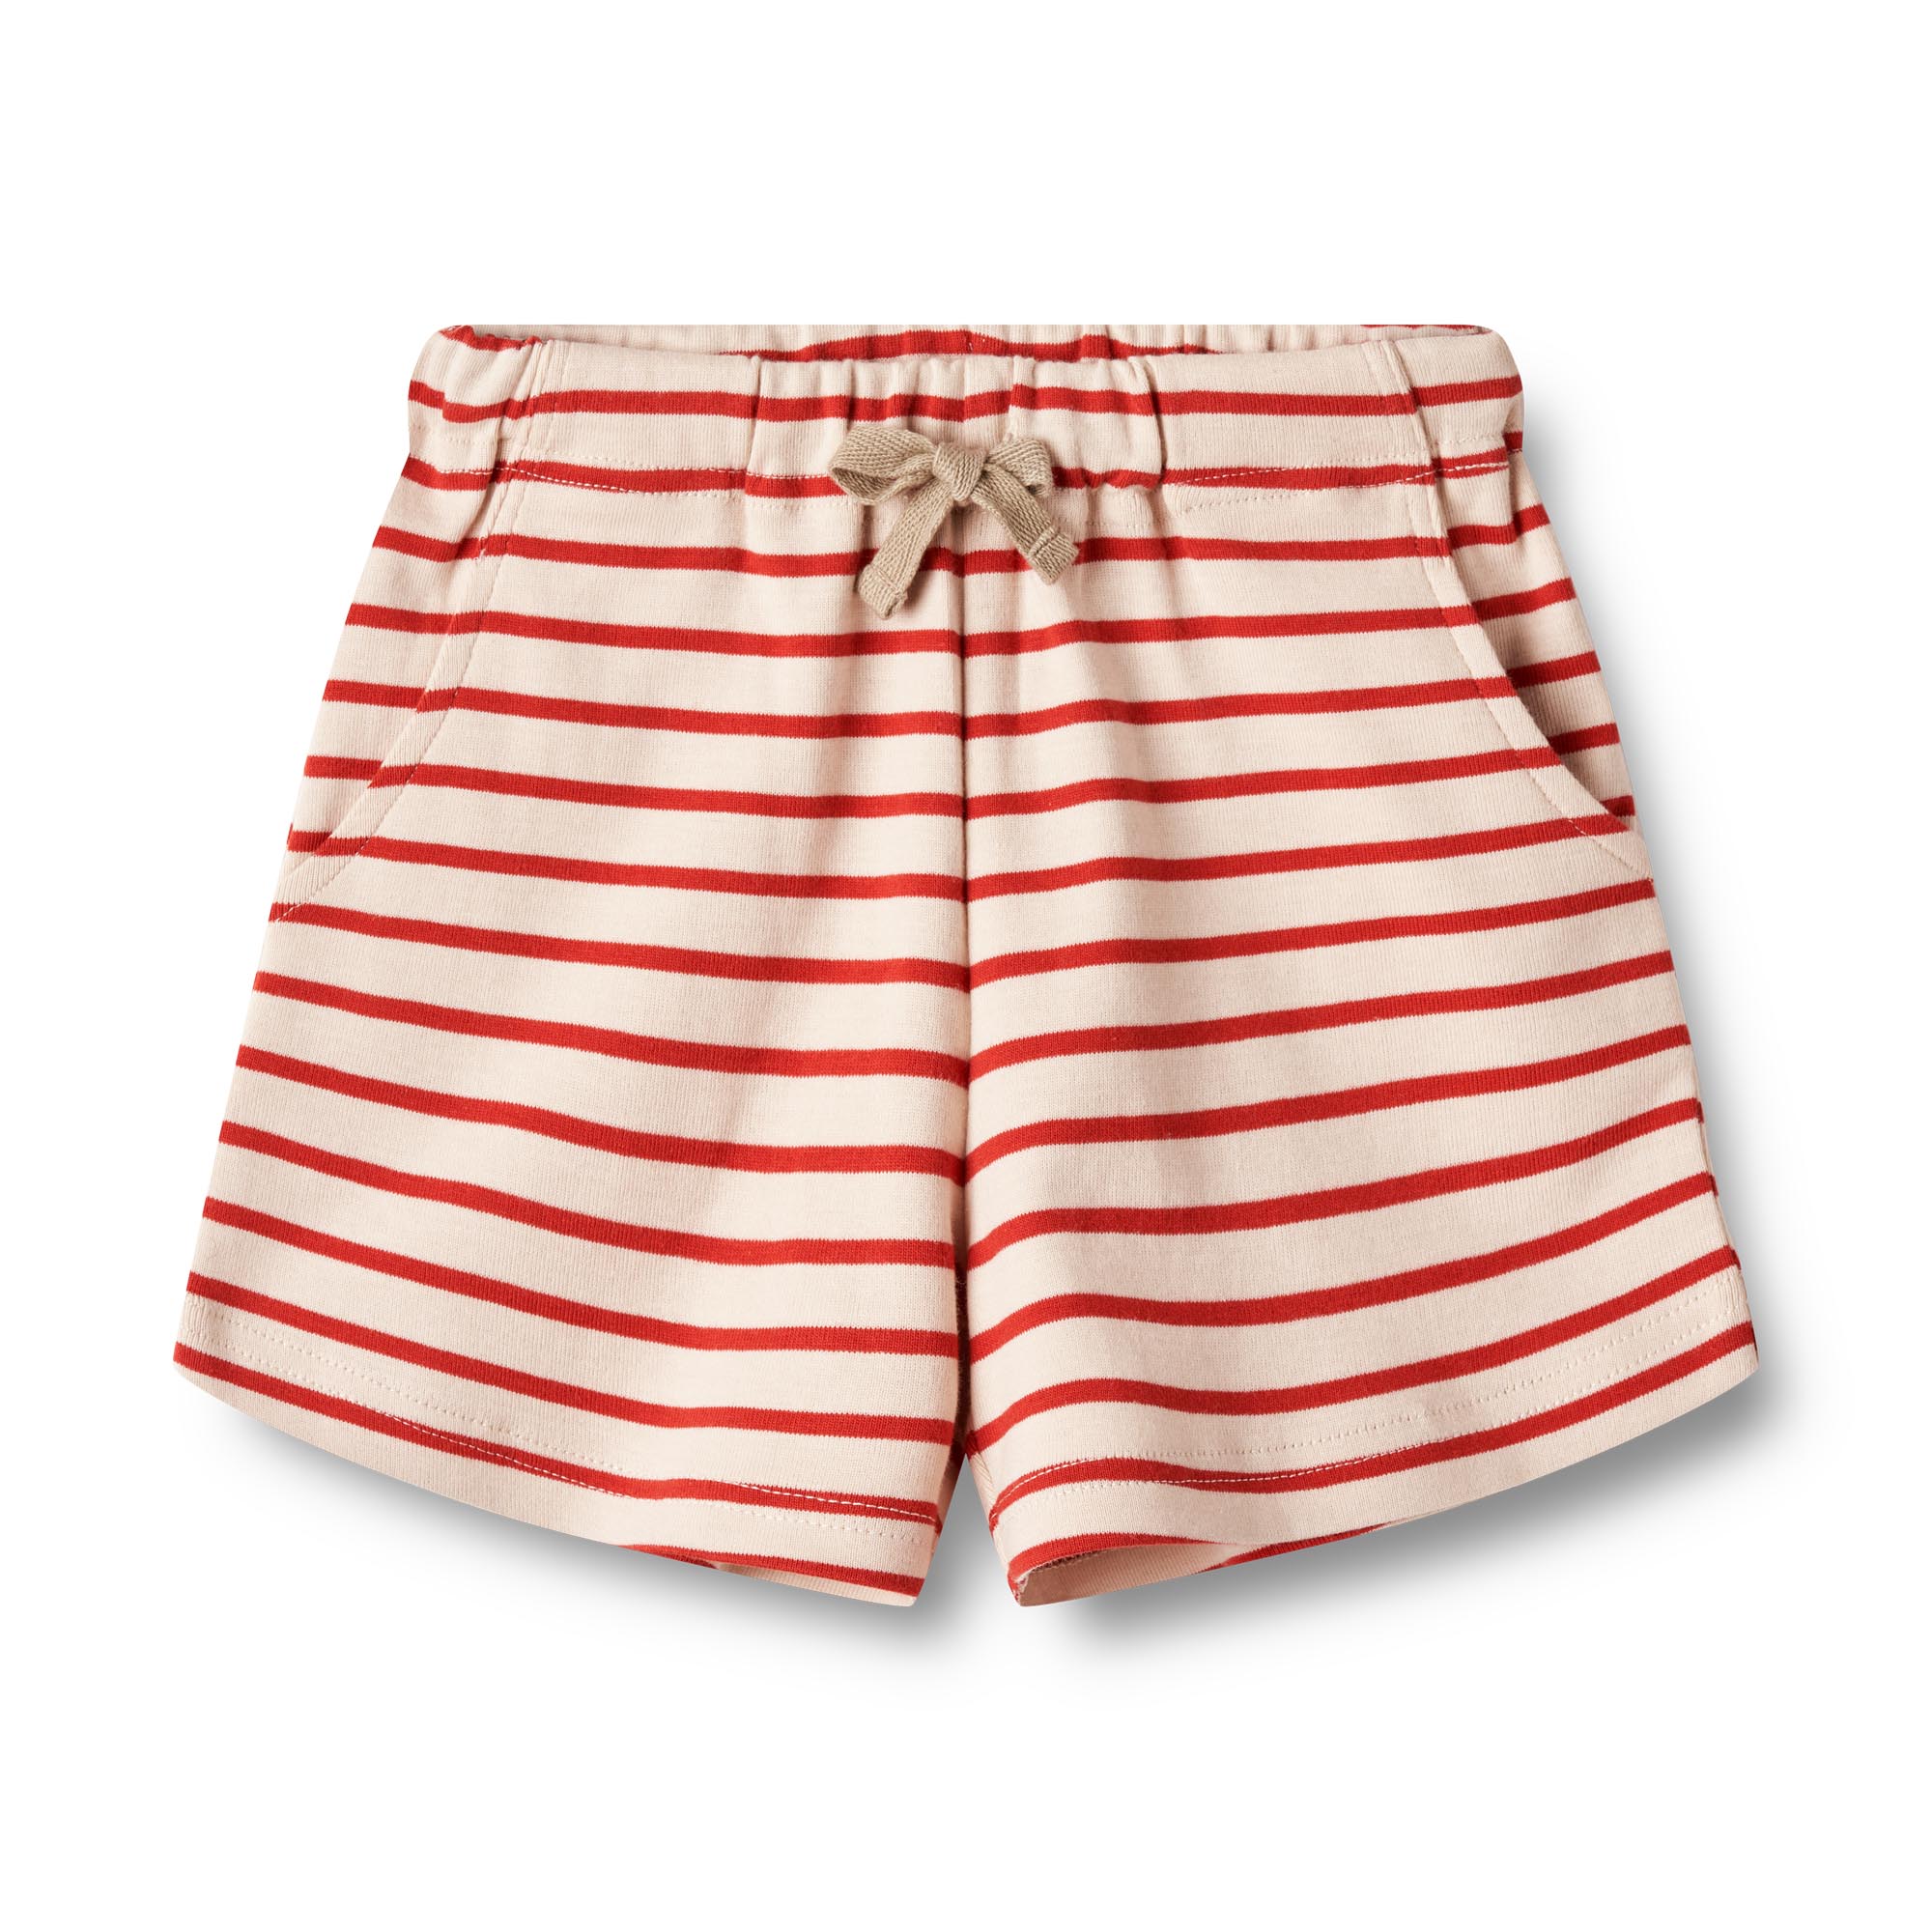 Jeff&Joy-Wheat-Jersey-Shorts-Kalle-2078-red-stripe